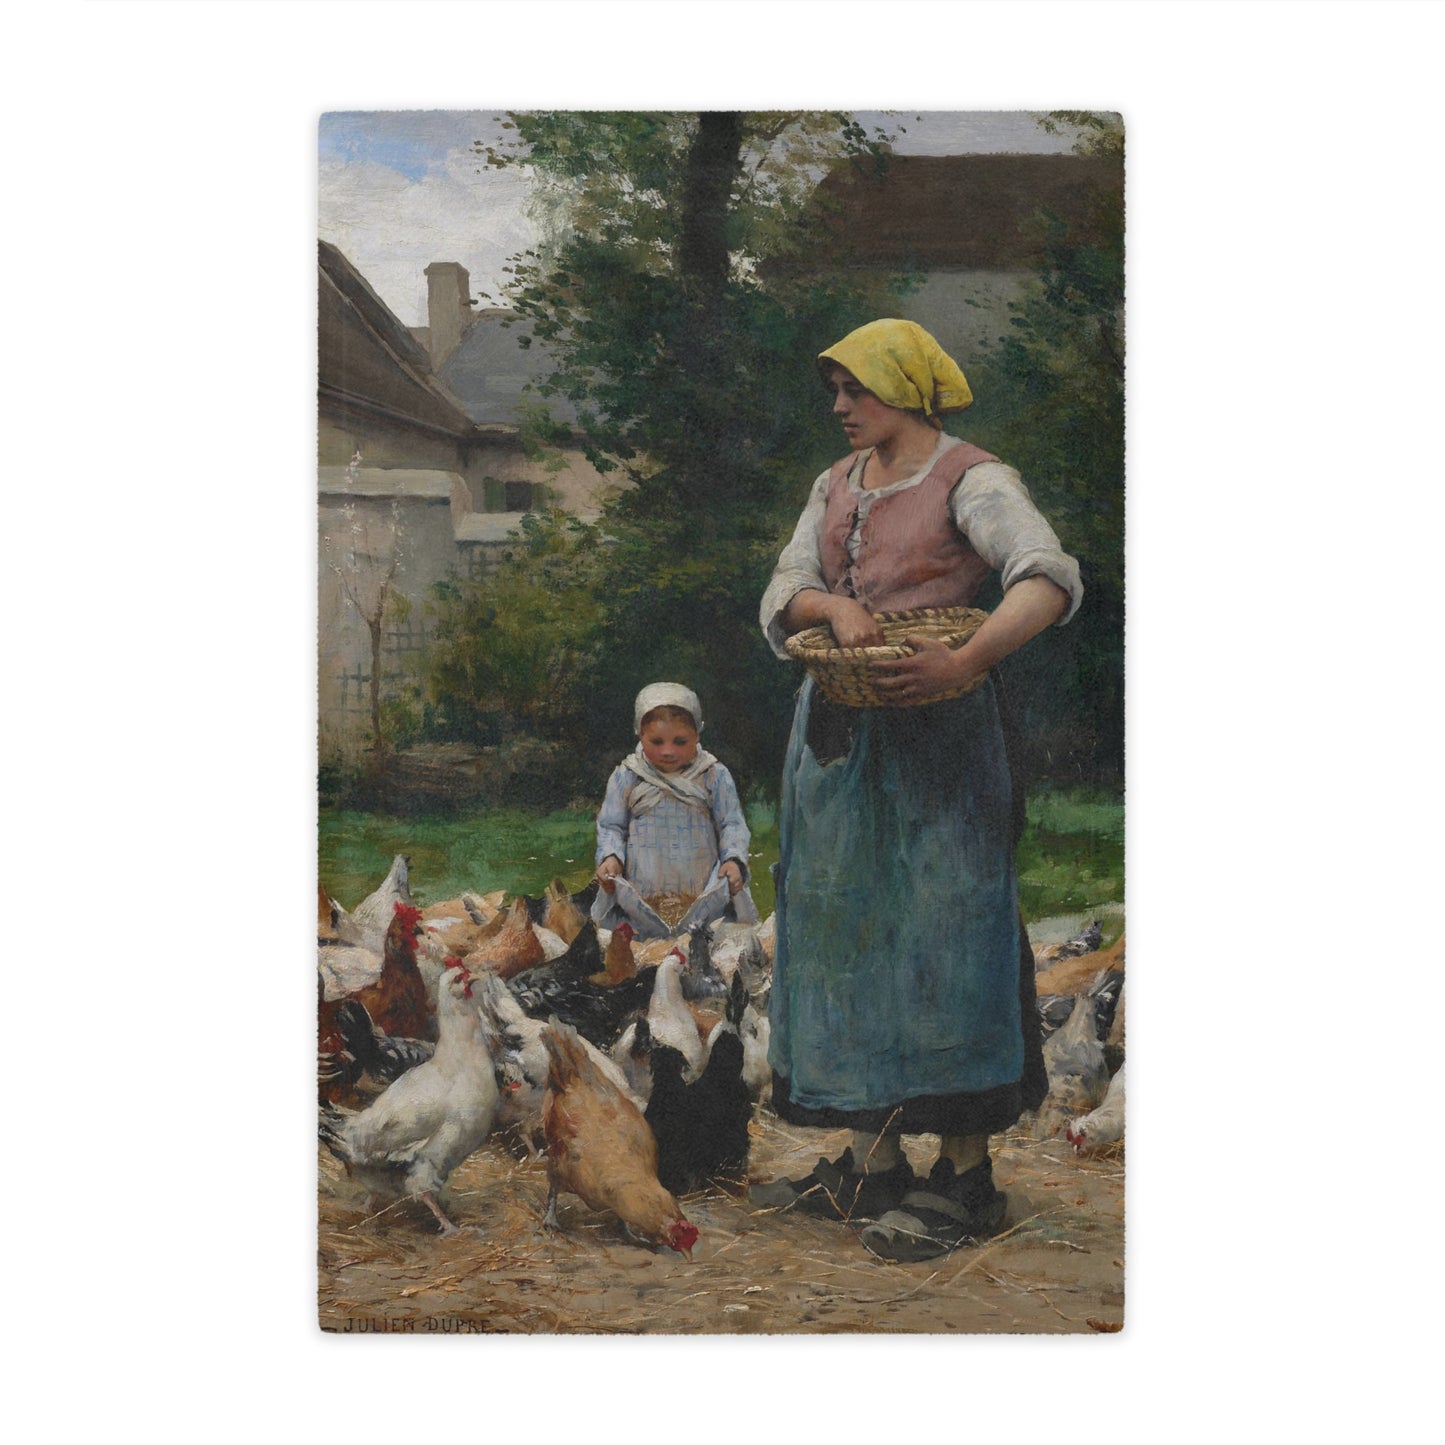 Julien Dupre: "Femme avec des poules" - Microfiber Blanket